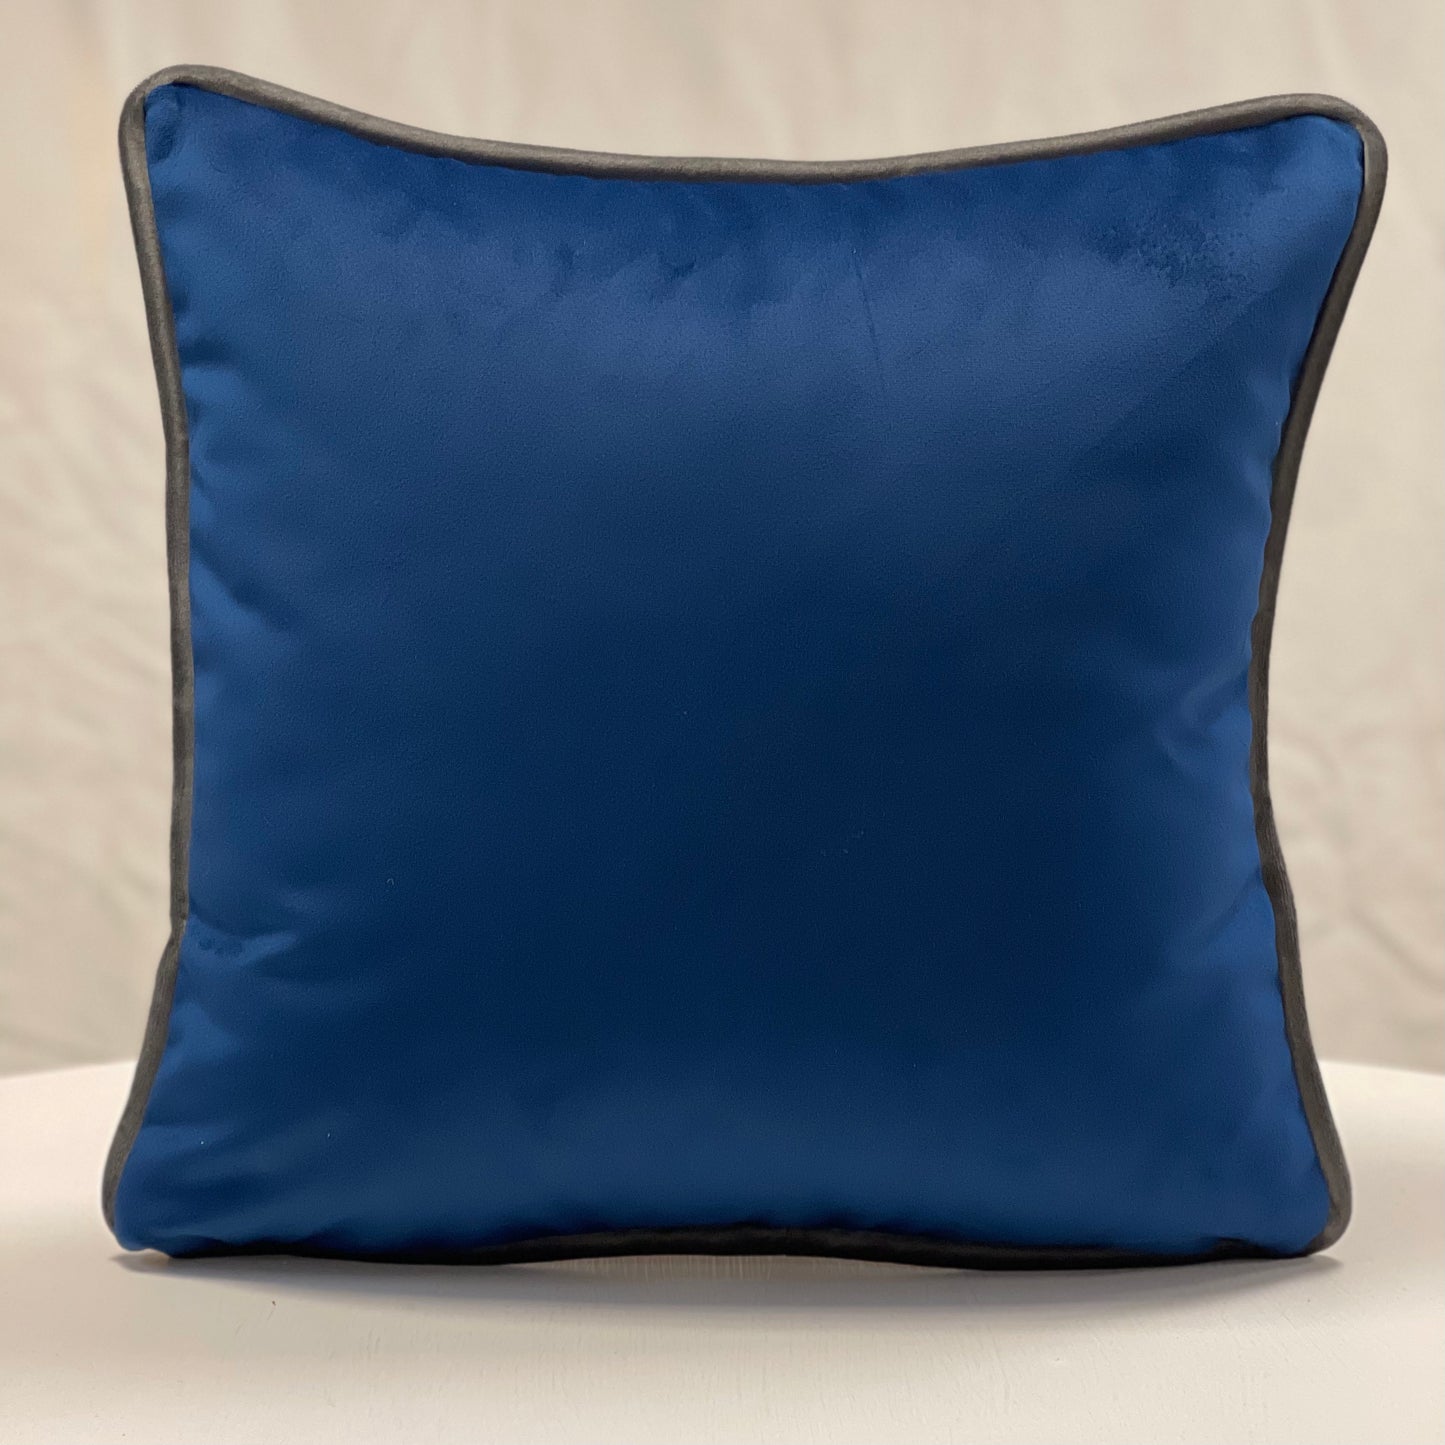 Blue velvet piped cushion